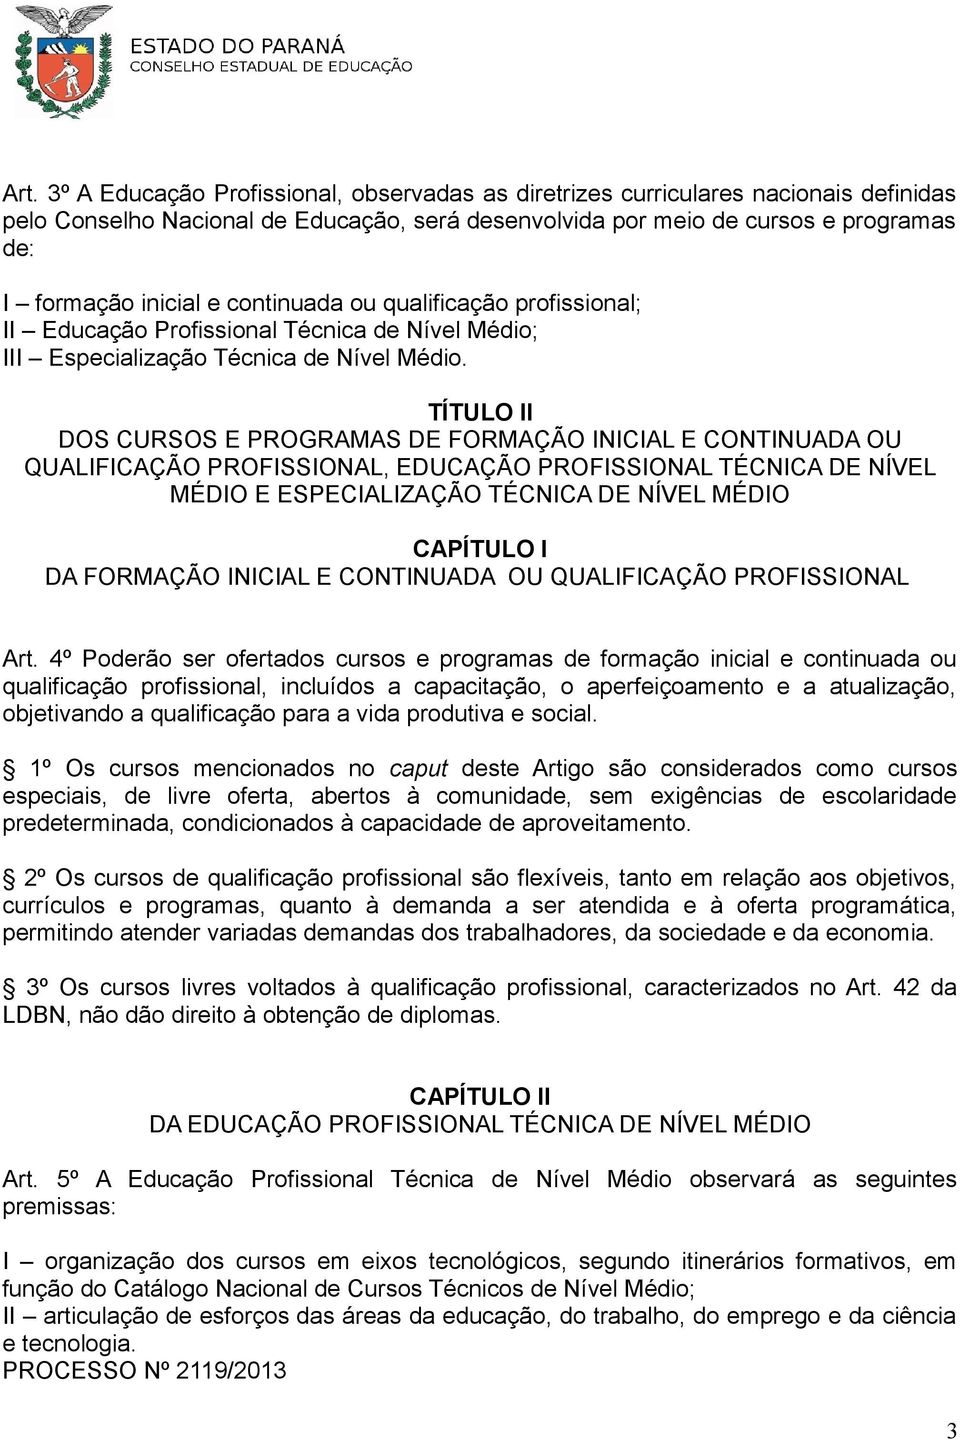 TÍTULO II DOS CURSOS E PROGRAMAS DE FORMAÇÃO INICIAL E CONTINUADA OU QUALIFICAÇÃO PROFISSIONAL, EDUCAÇÃO PROFISSIONAL TÉCNICA DE NÍVEL MÉDIO E ESPECIALIZAÇÃO TÉCNICA DE NÍVEL MÉDIO CAPÍTULO I DA